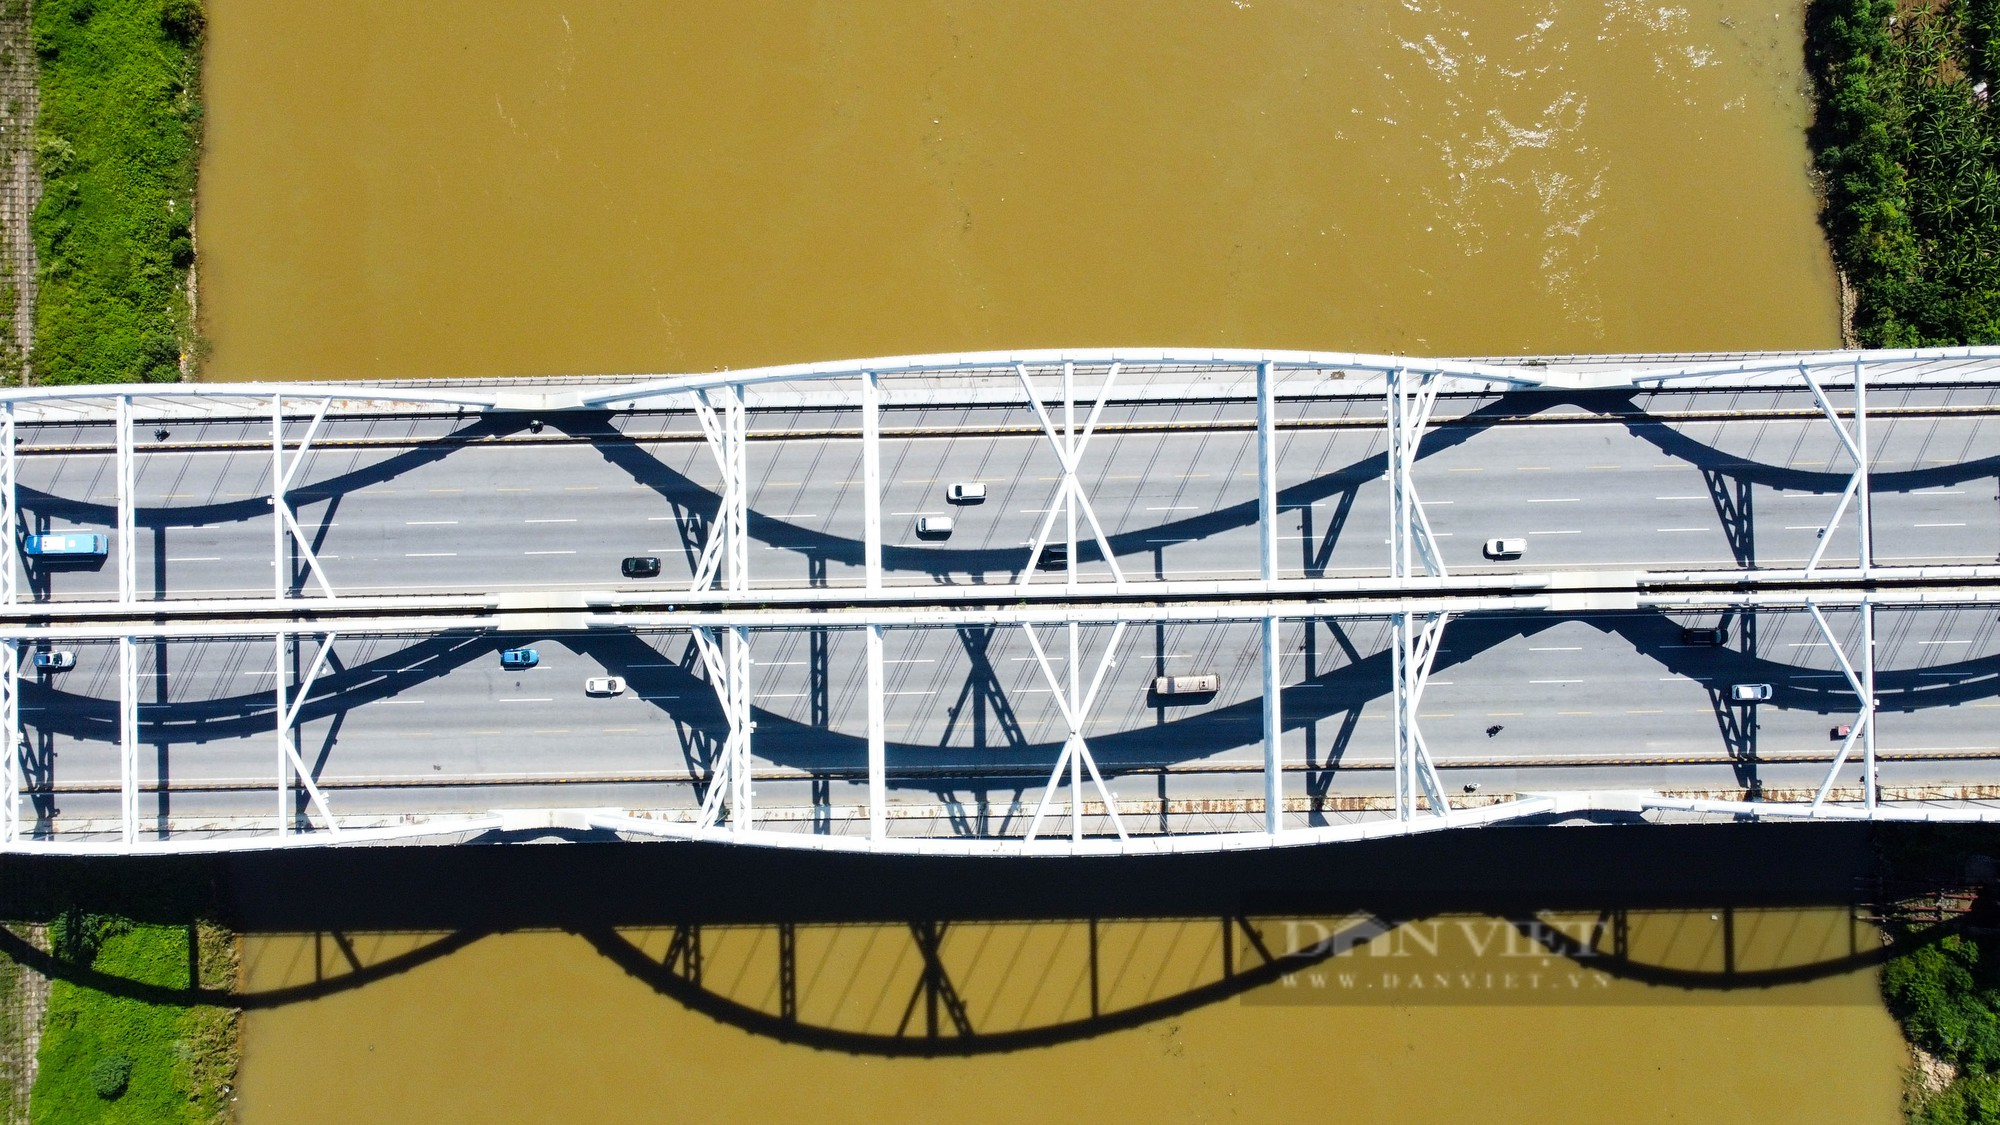 Chiêm ngưỡng cây cầu vòm thép vượt sông rộng nhất Việt Nam sau gần 10 năm đưa vào sử dụng - Ảnh 13.